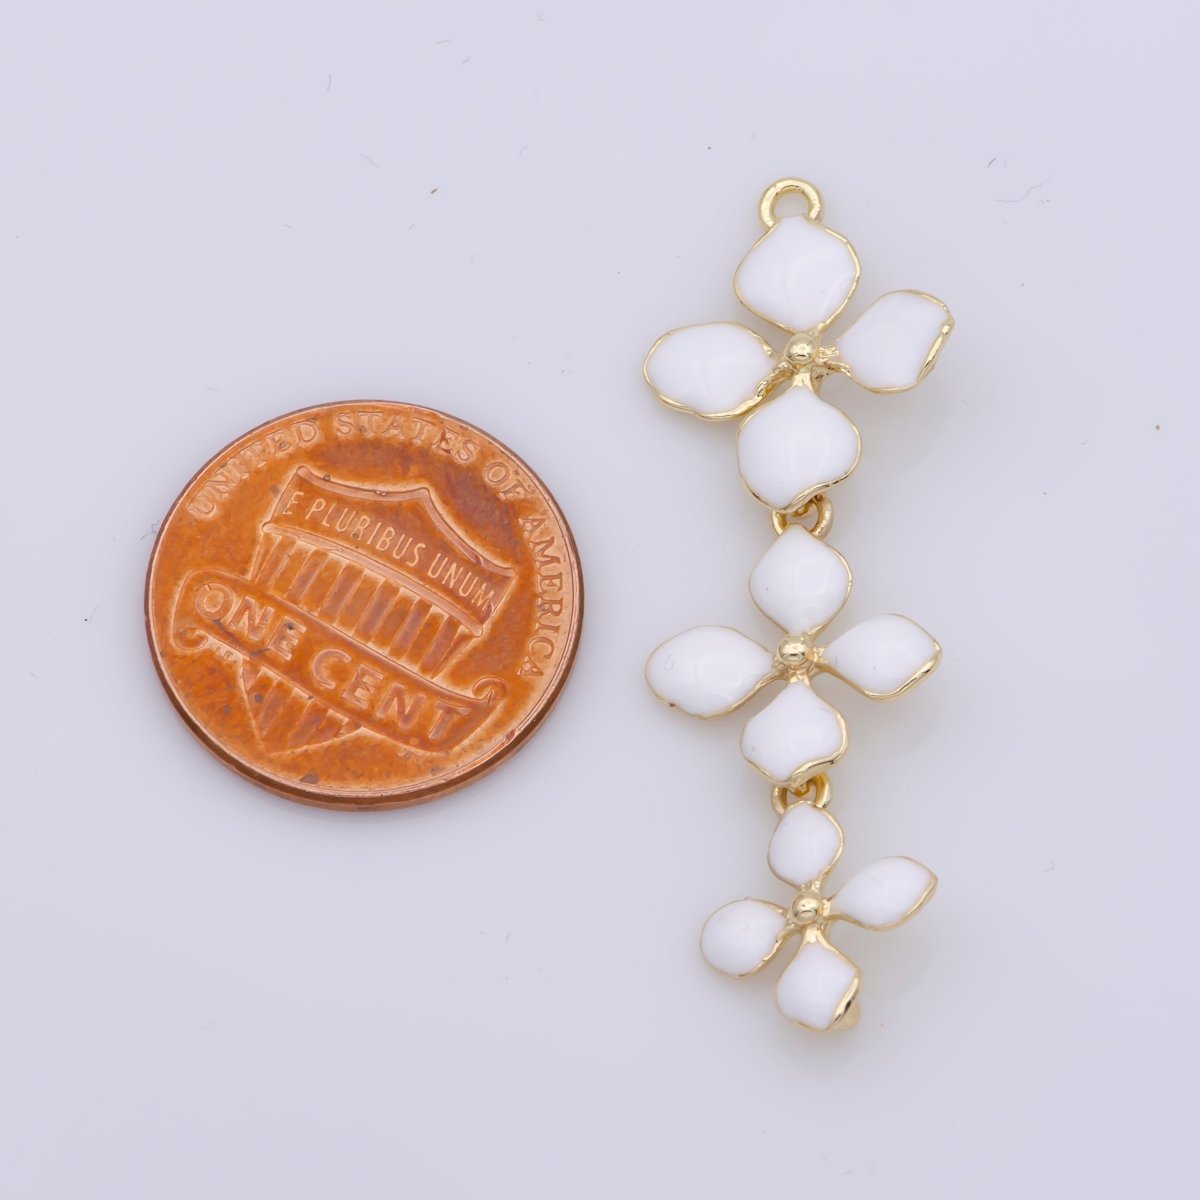 14K Gold Filled Four-Petal Flower Pendant, Enamel Flower Charm, Gold Flower Charm, Earring Necklace Making Findings 40x15mm F-934~F-936 - DLUXCA